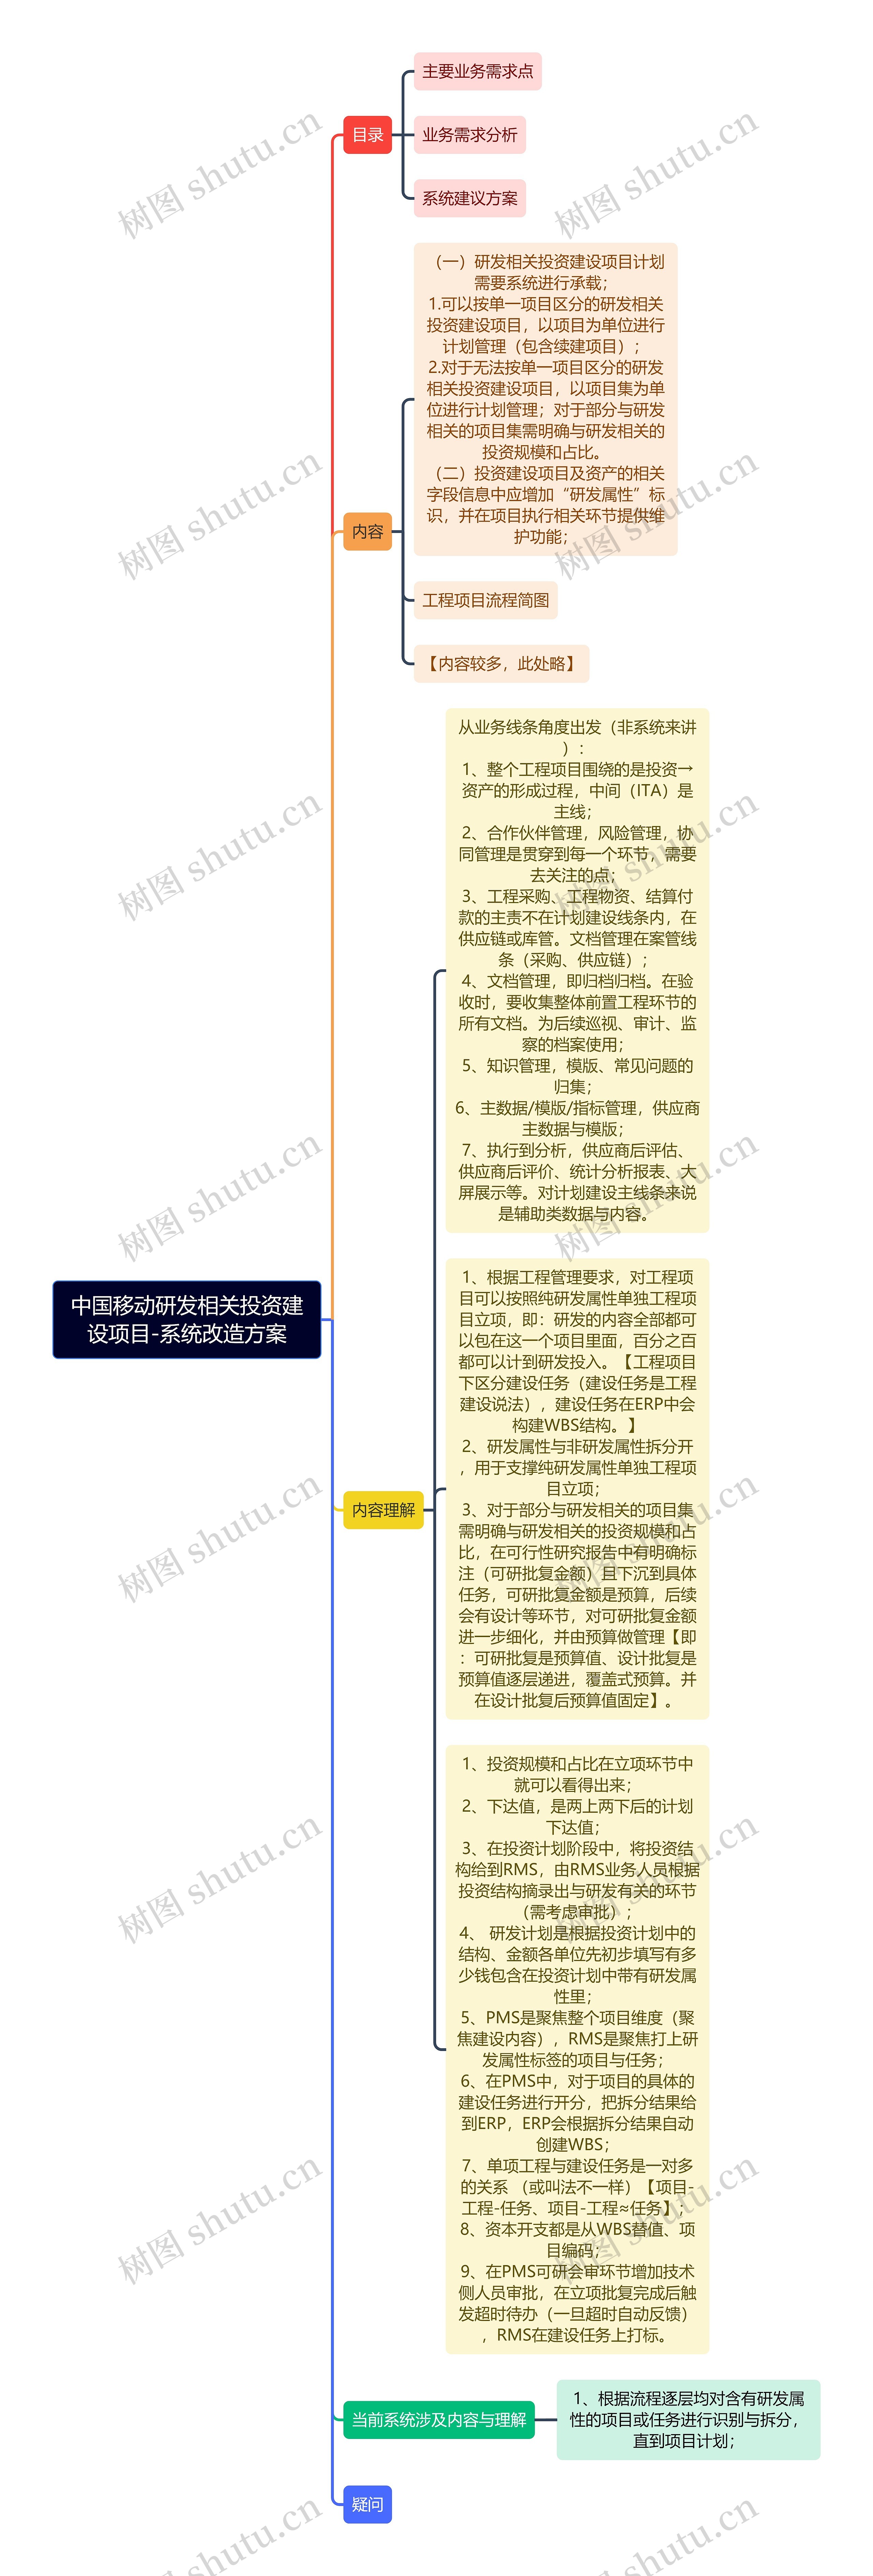 中国移动研发相关投资建设项目-系统改造方案思维导图